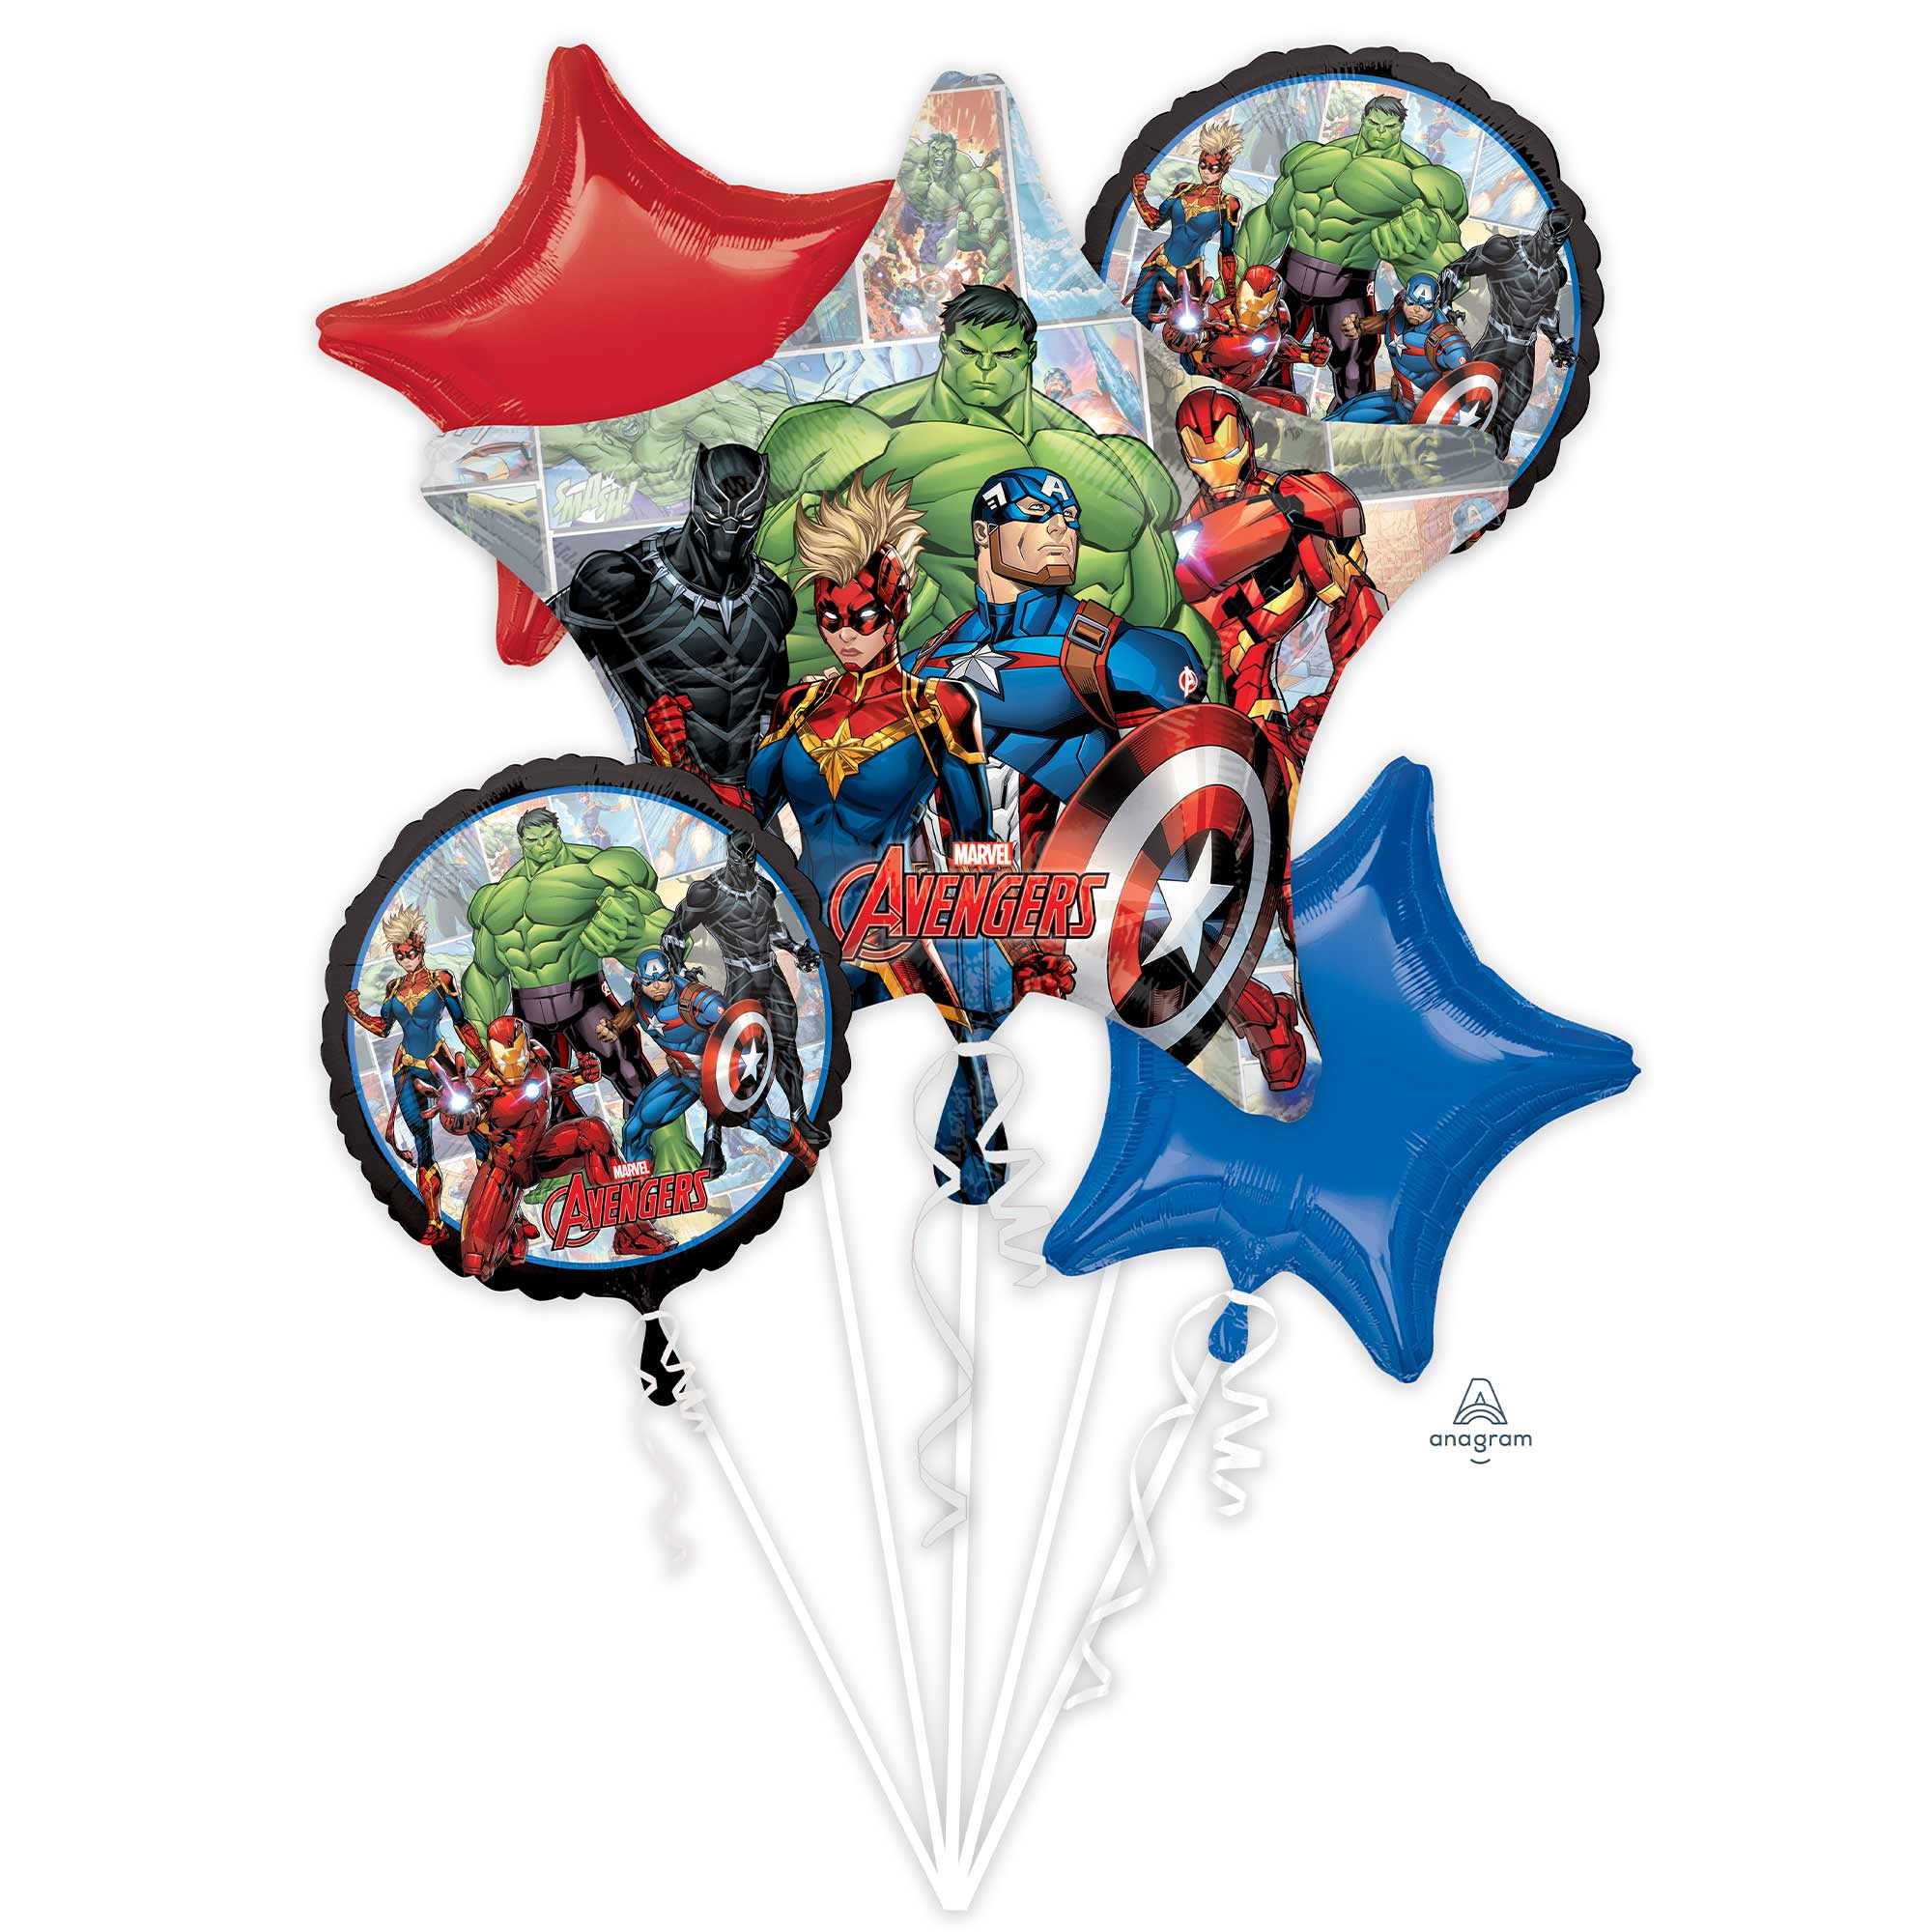 Marvel Avengers Powers Unite Bouquet Foil Balloons - 5 Pack Default Title